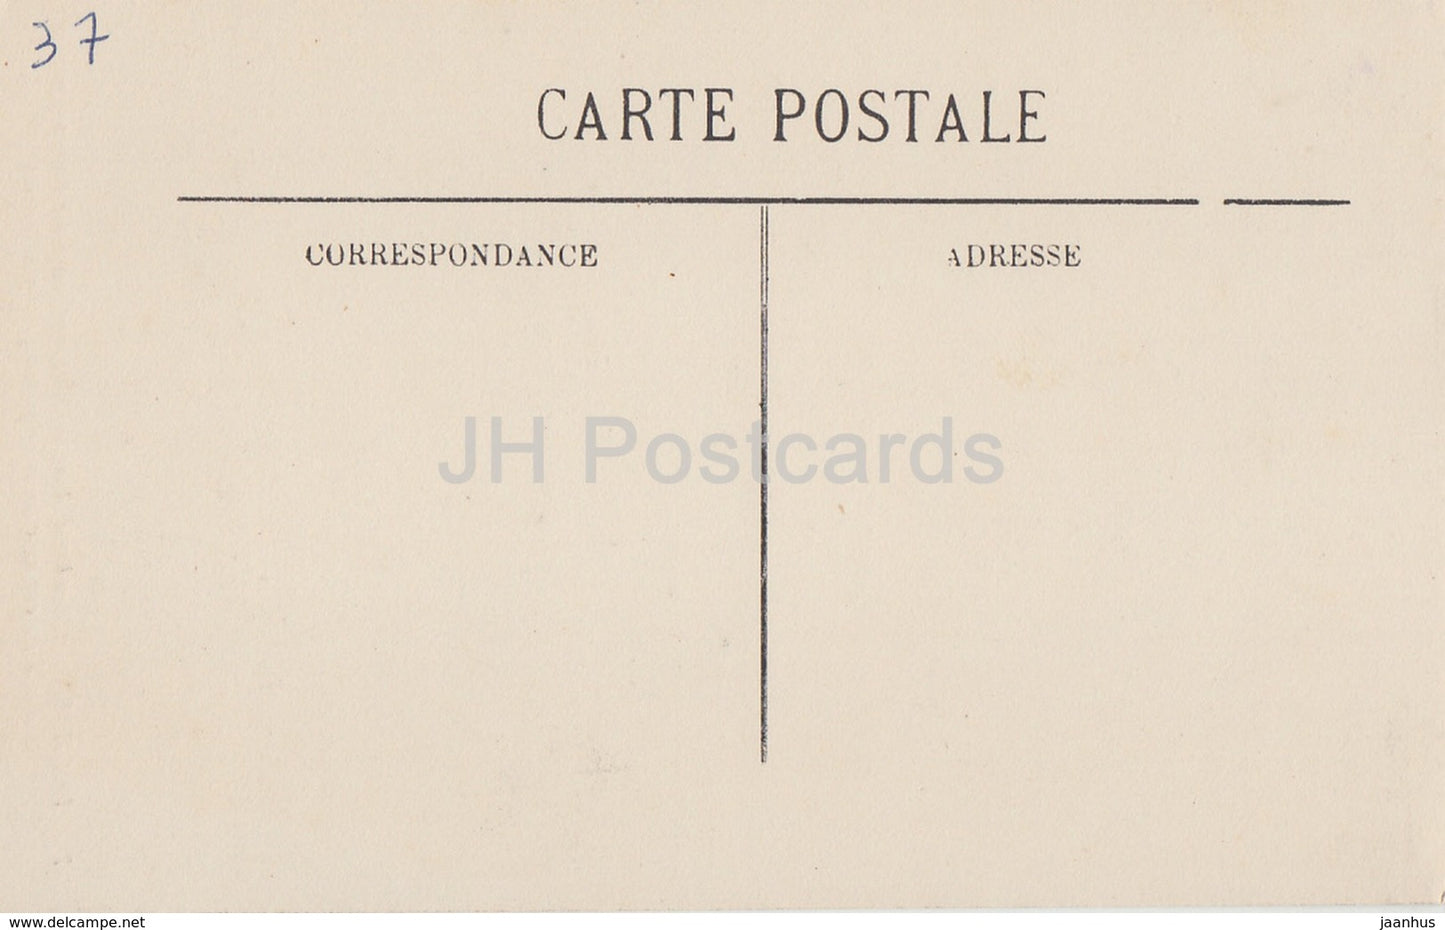 Loches - Chambre d'Anne de Bretagne - ou a ete tenu prisonnier le duc - castle - 75 - old postcard - France - unused